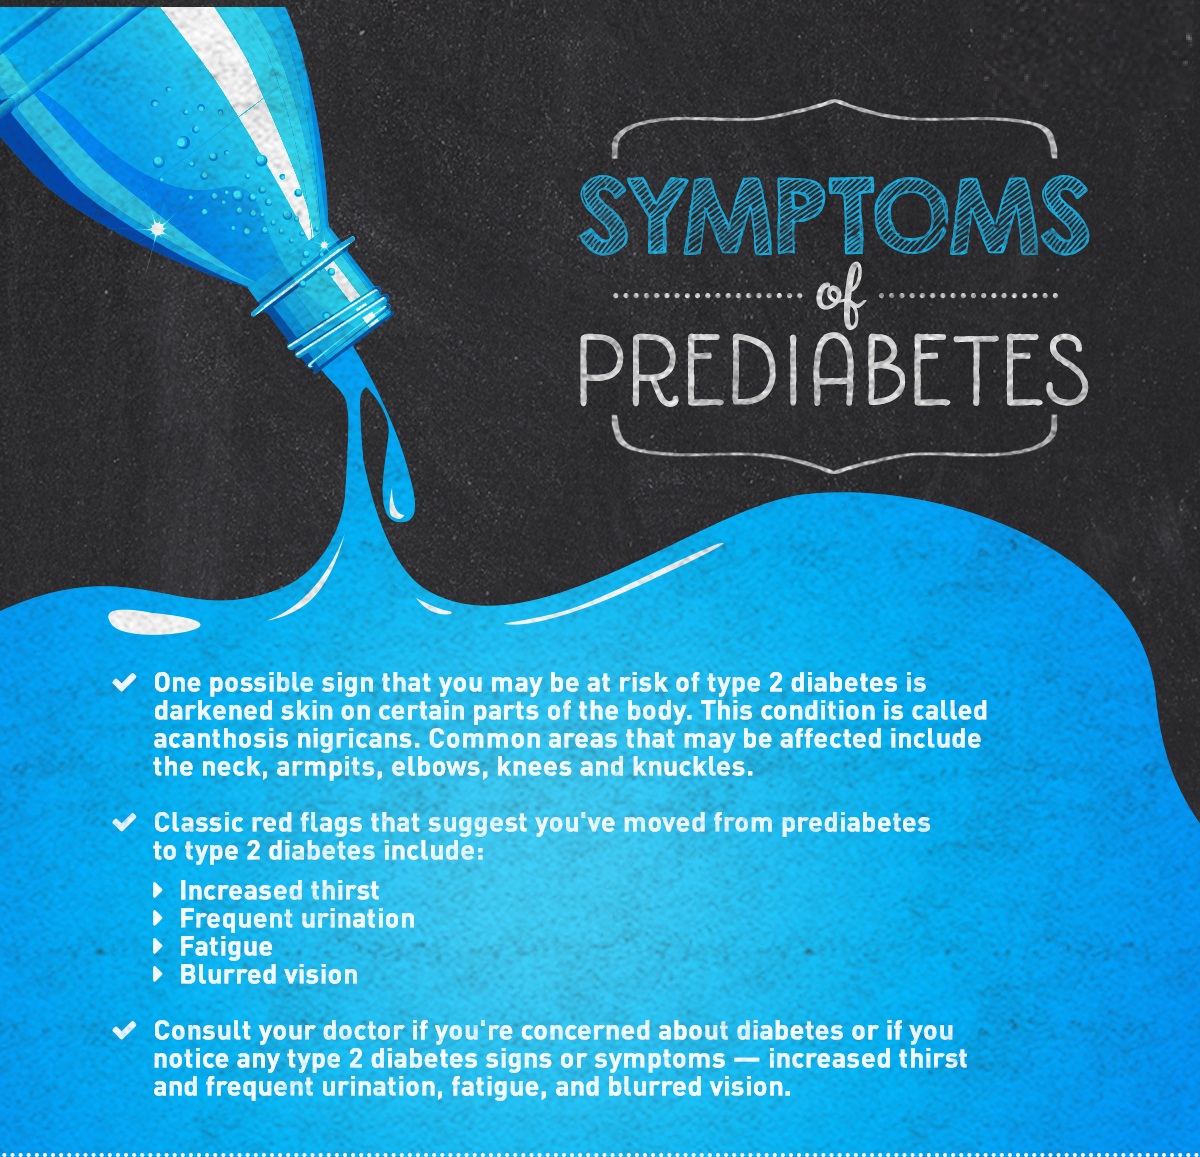 Symptoms of prediabetes